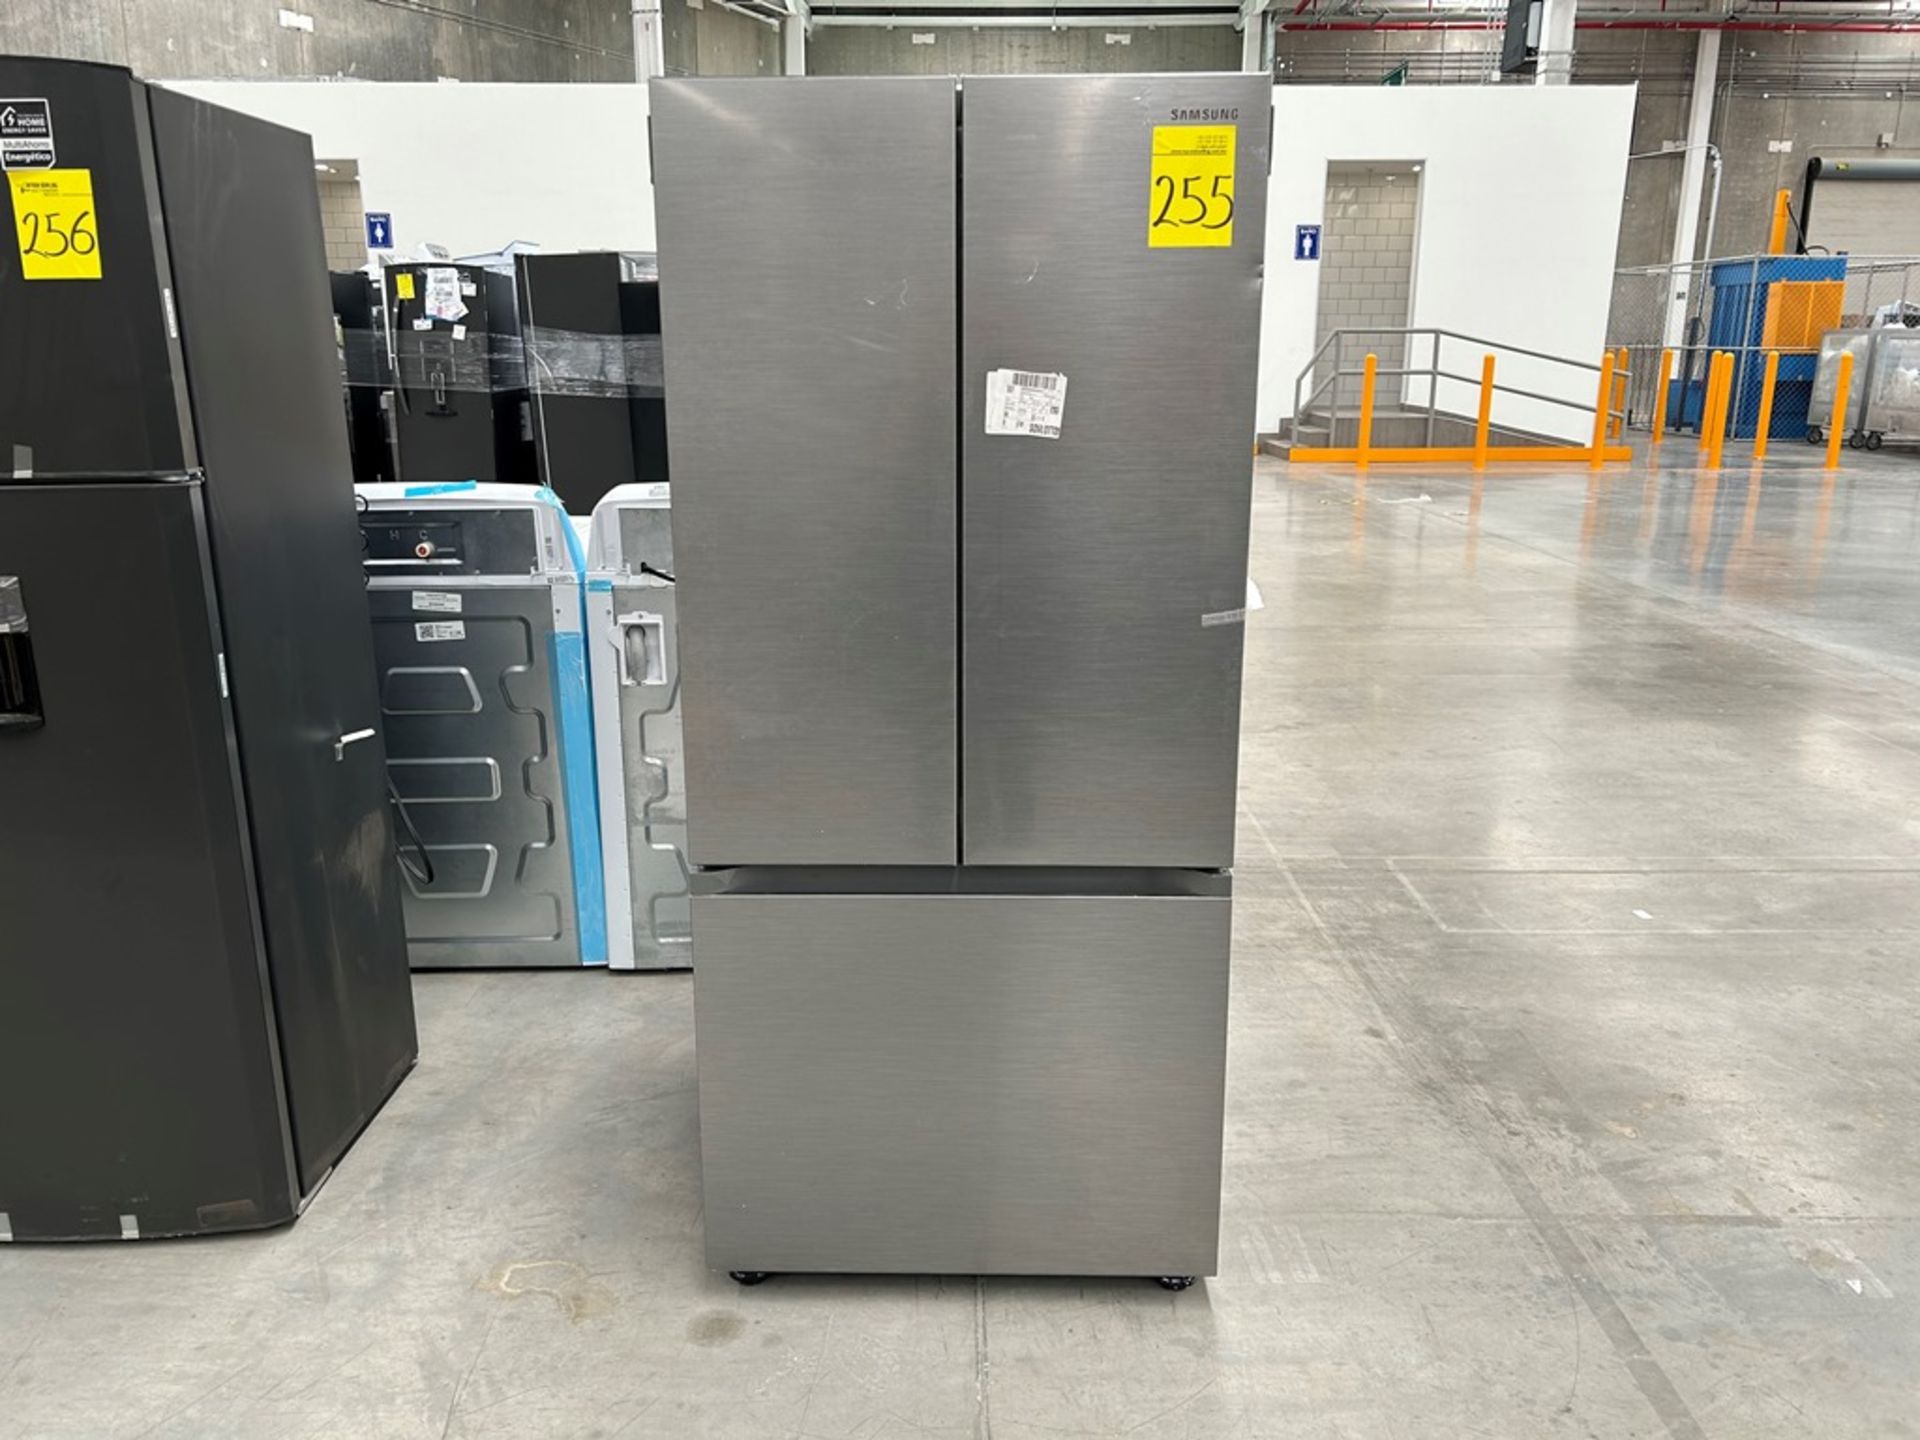 1 refrigerador Marca SAMSUNG, Modelo RF22A4010S9, Serie 01967J, Color GRIS (Equipo de devolución)